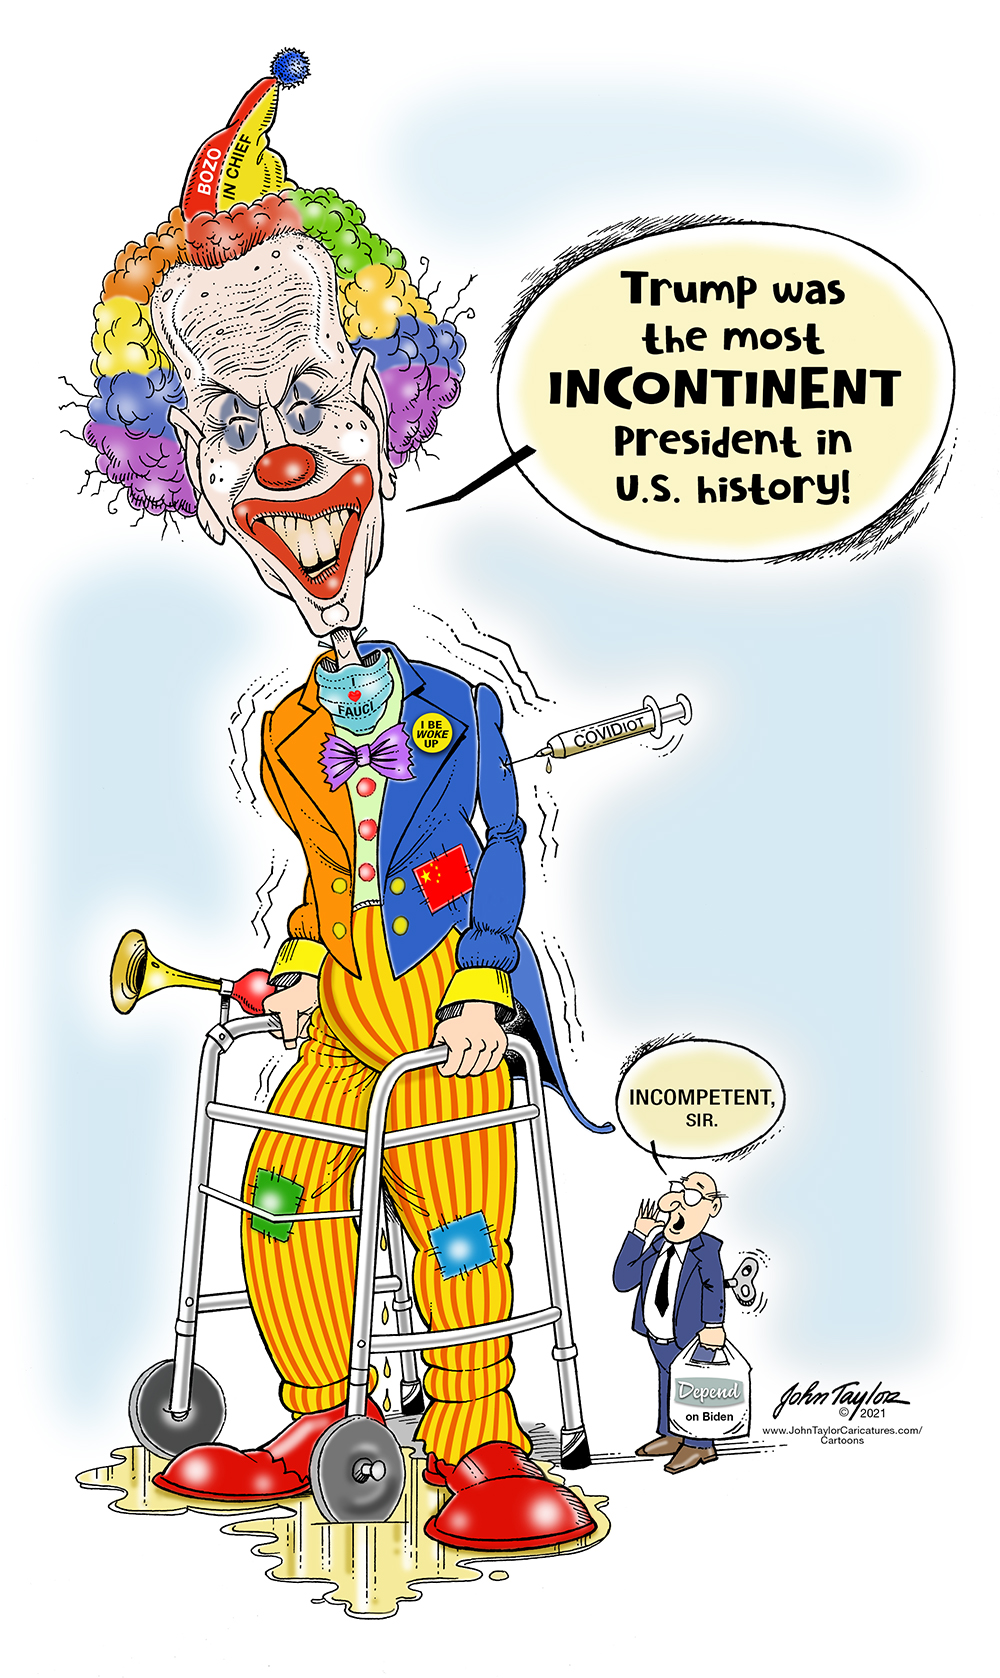 Joe Biden the incontinent clown